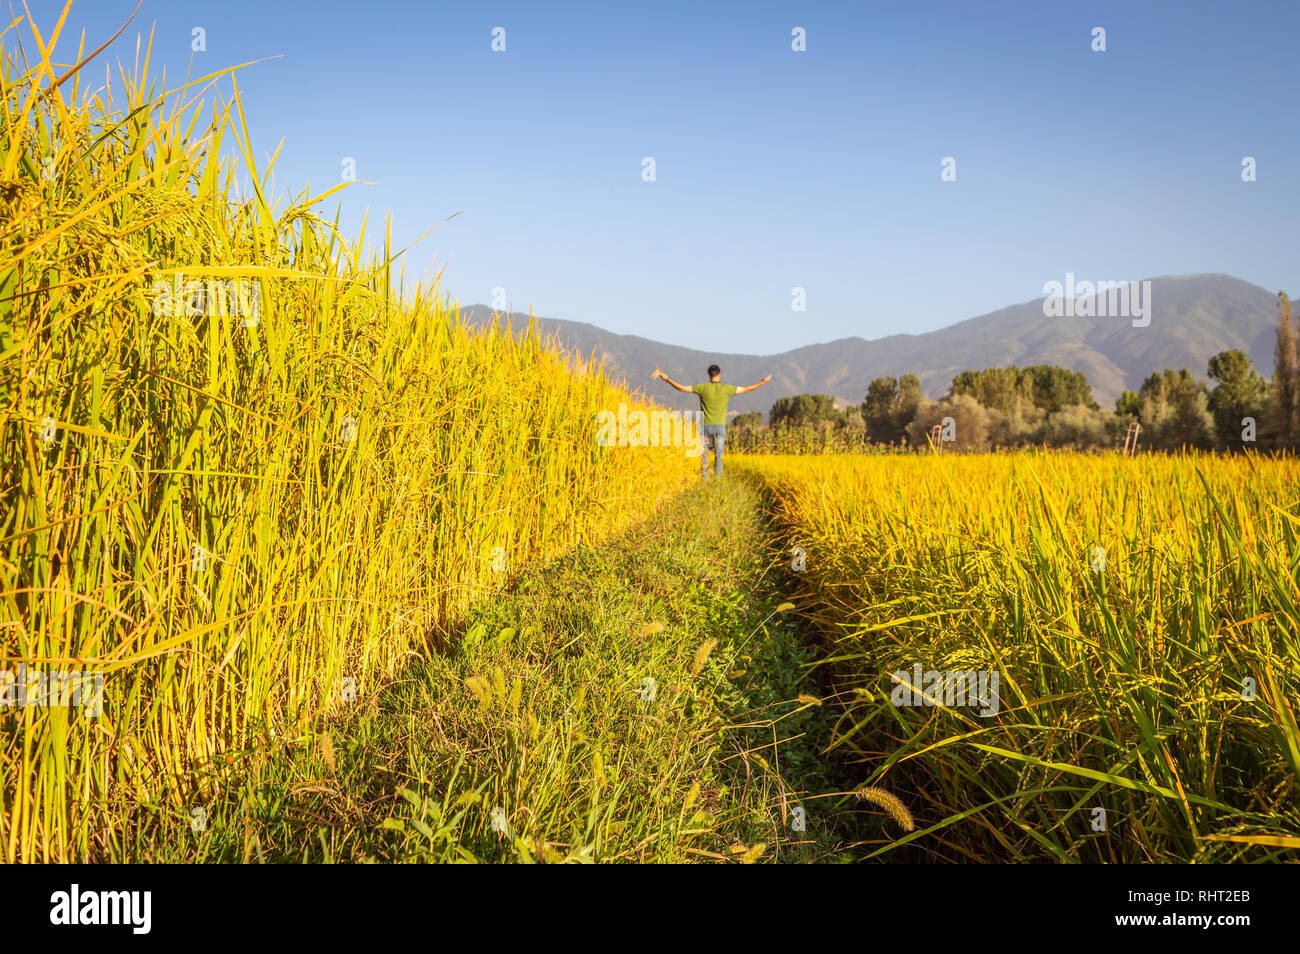 Eine stehende Person mit seinen Armen in einem Reisfeld Reisfeld in Kaschmir geöffnet Stockfoto